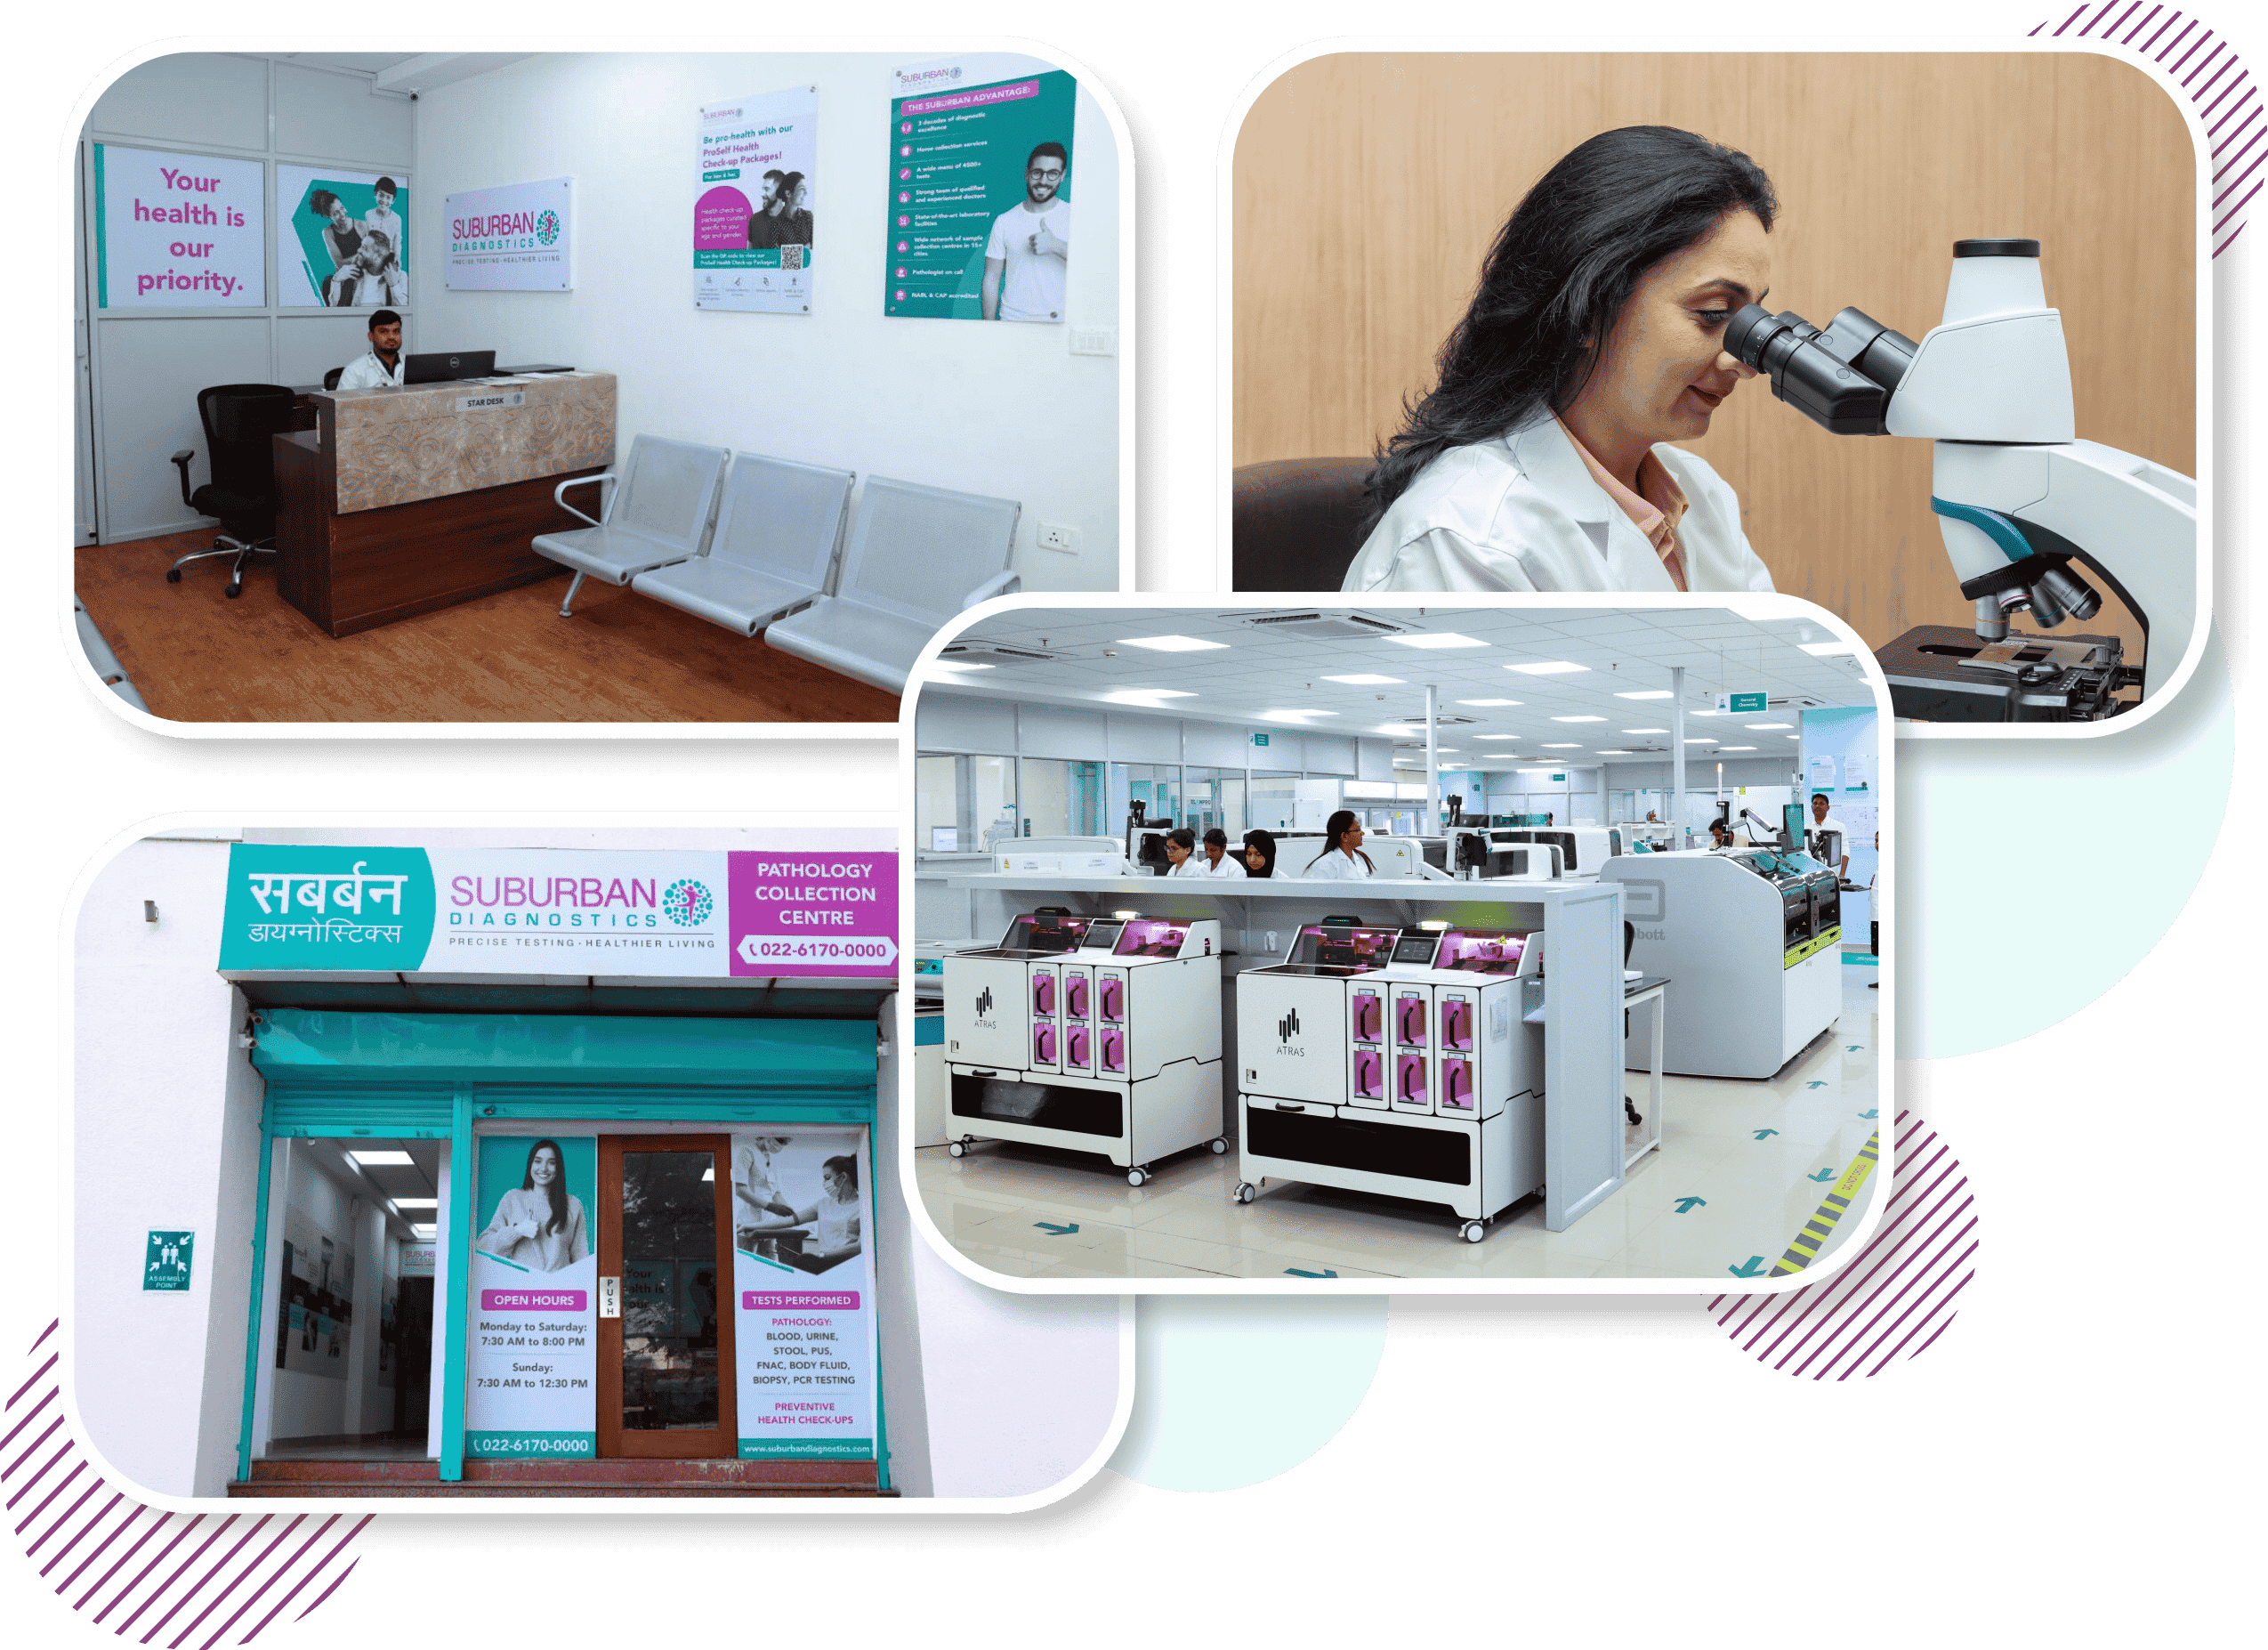 Suburban Diagnostics Center and Laboratory in Indore